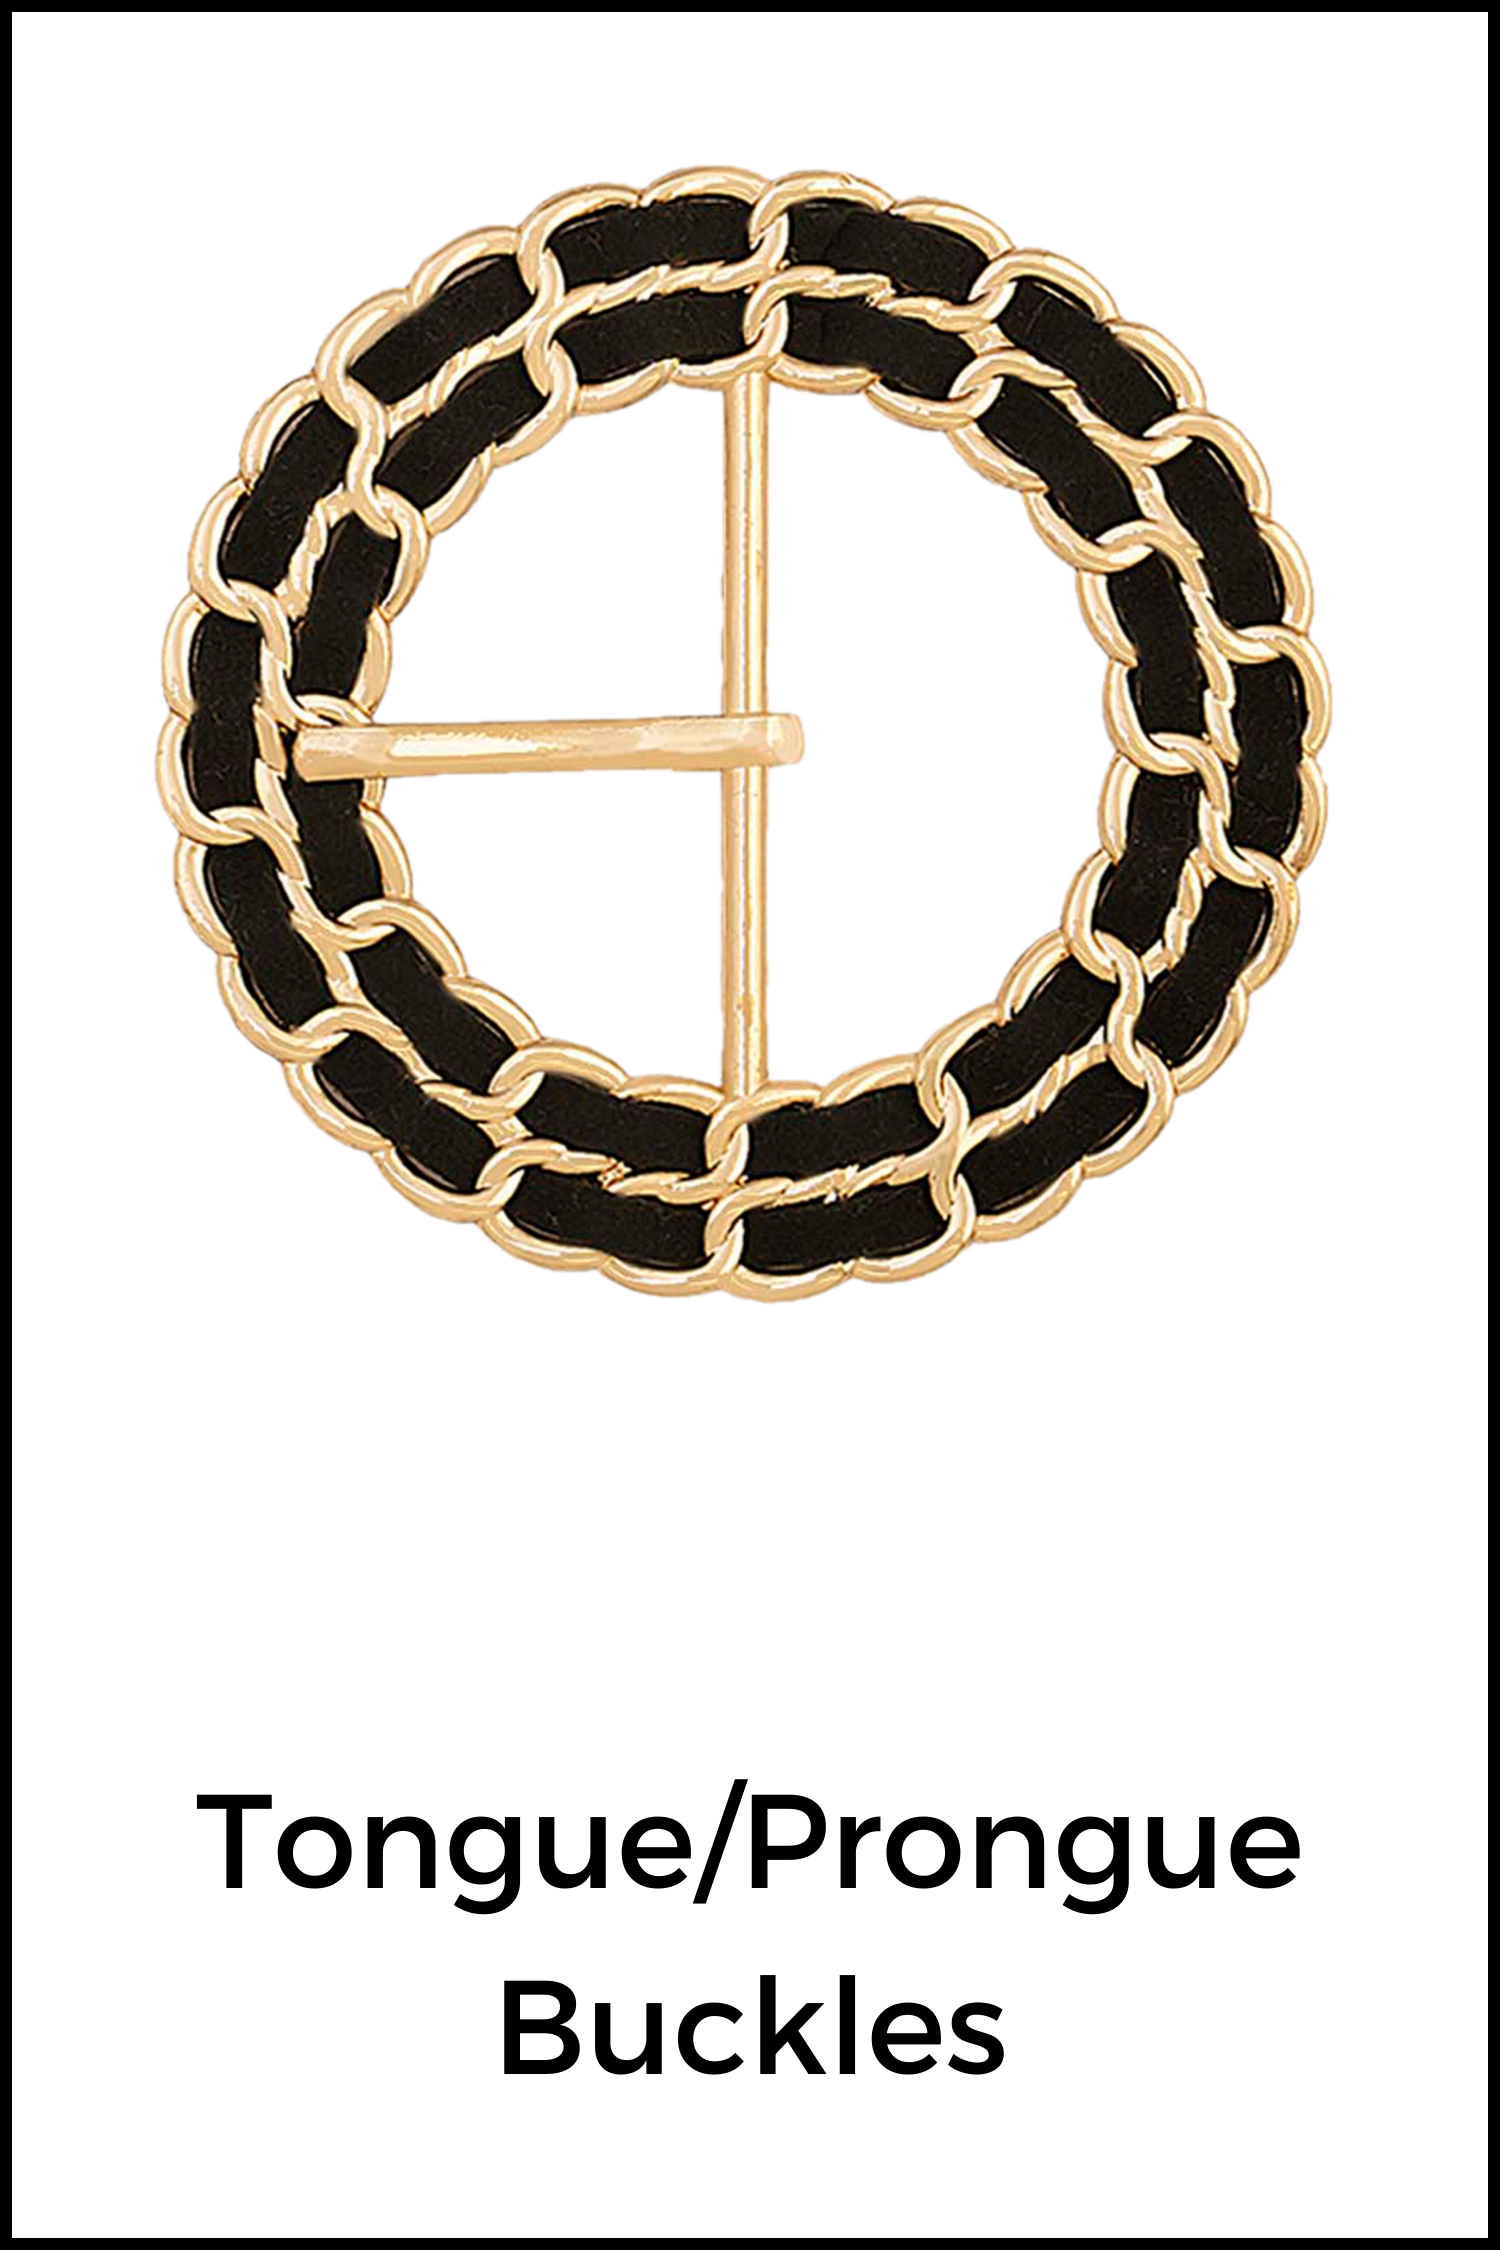 Tongue/Prong Buckles